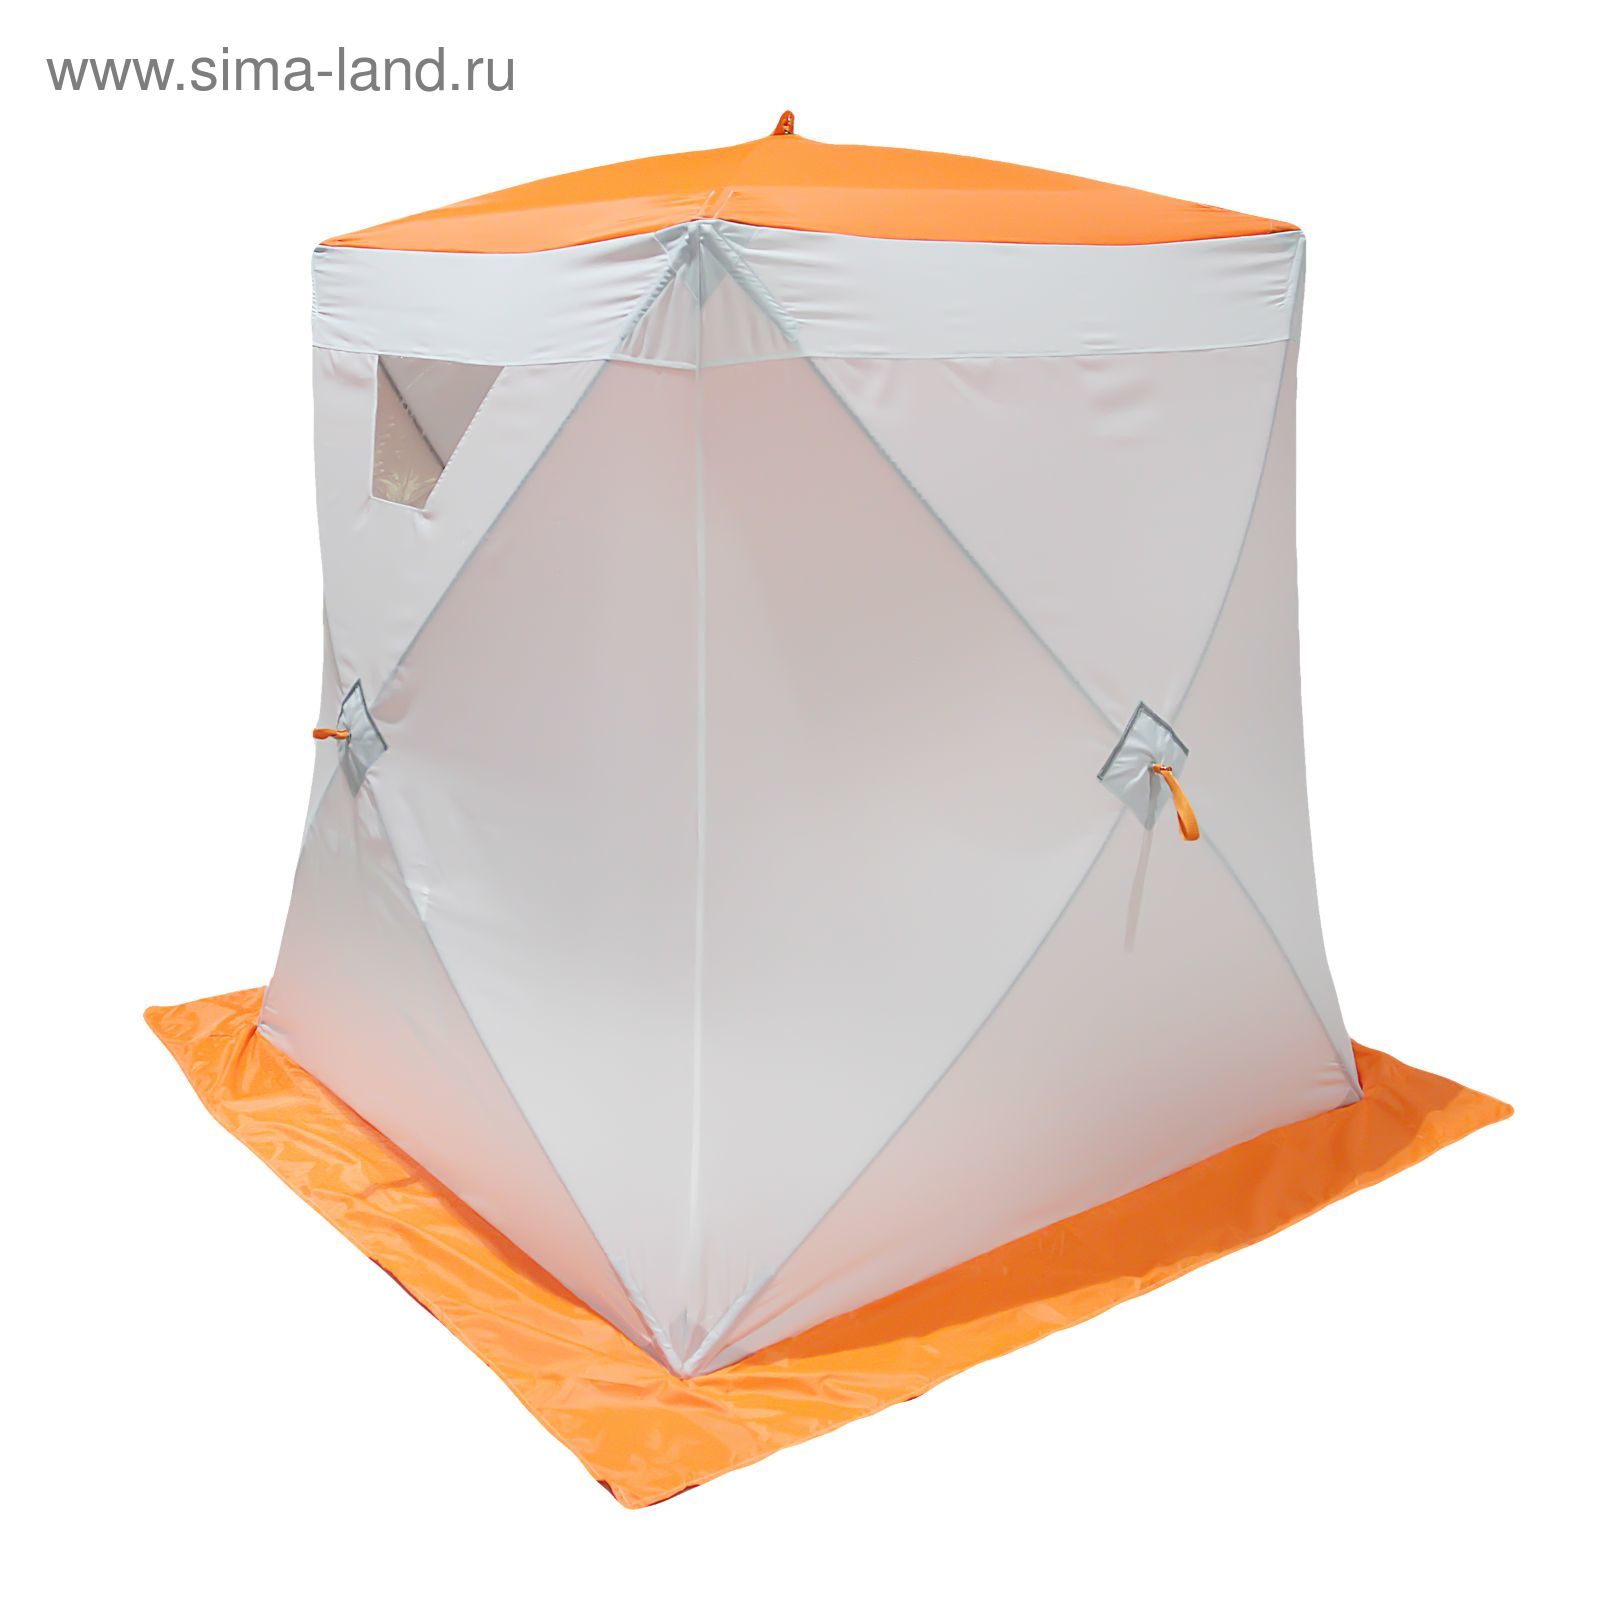 Палатка "Призма Cтандарт" 150, 1-слойная, цвет бело-оранжевый